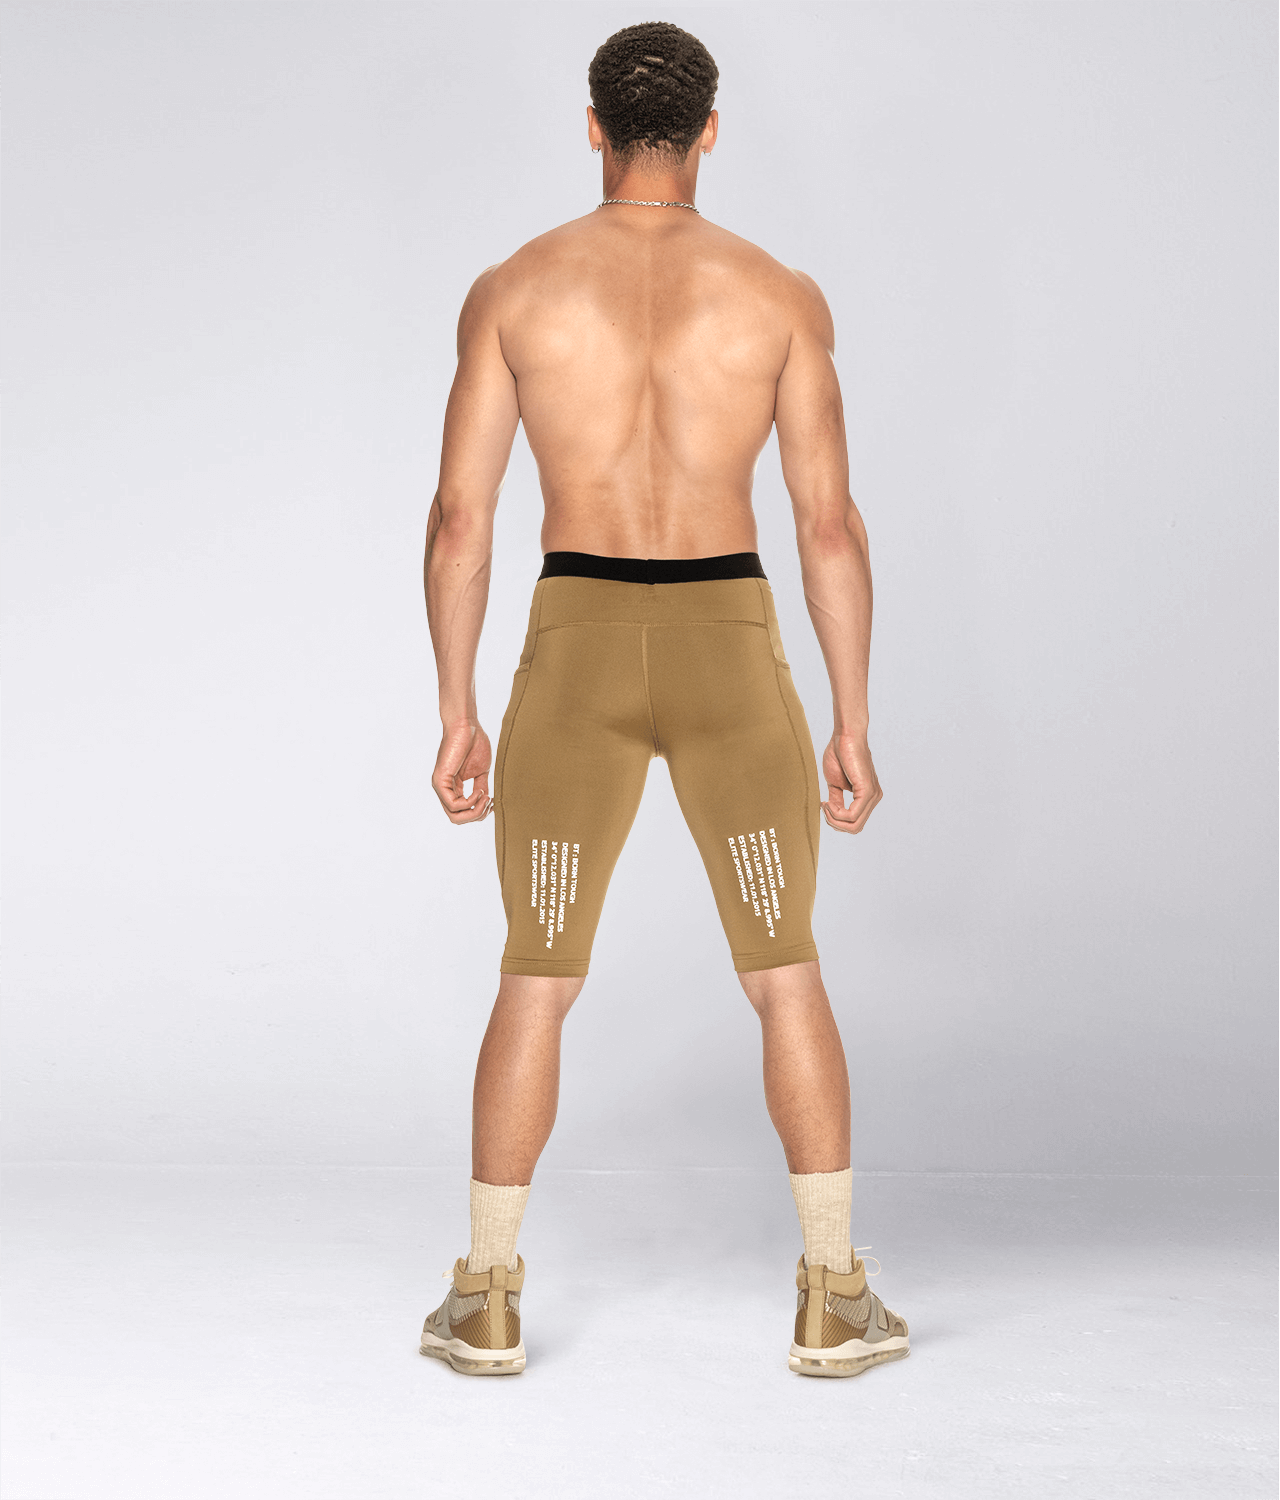 Born Tough Mens Gym Workout Compression Shorts Khaki - Elite Sports